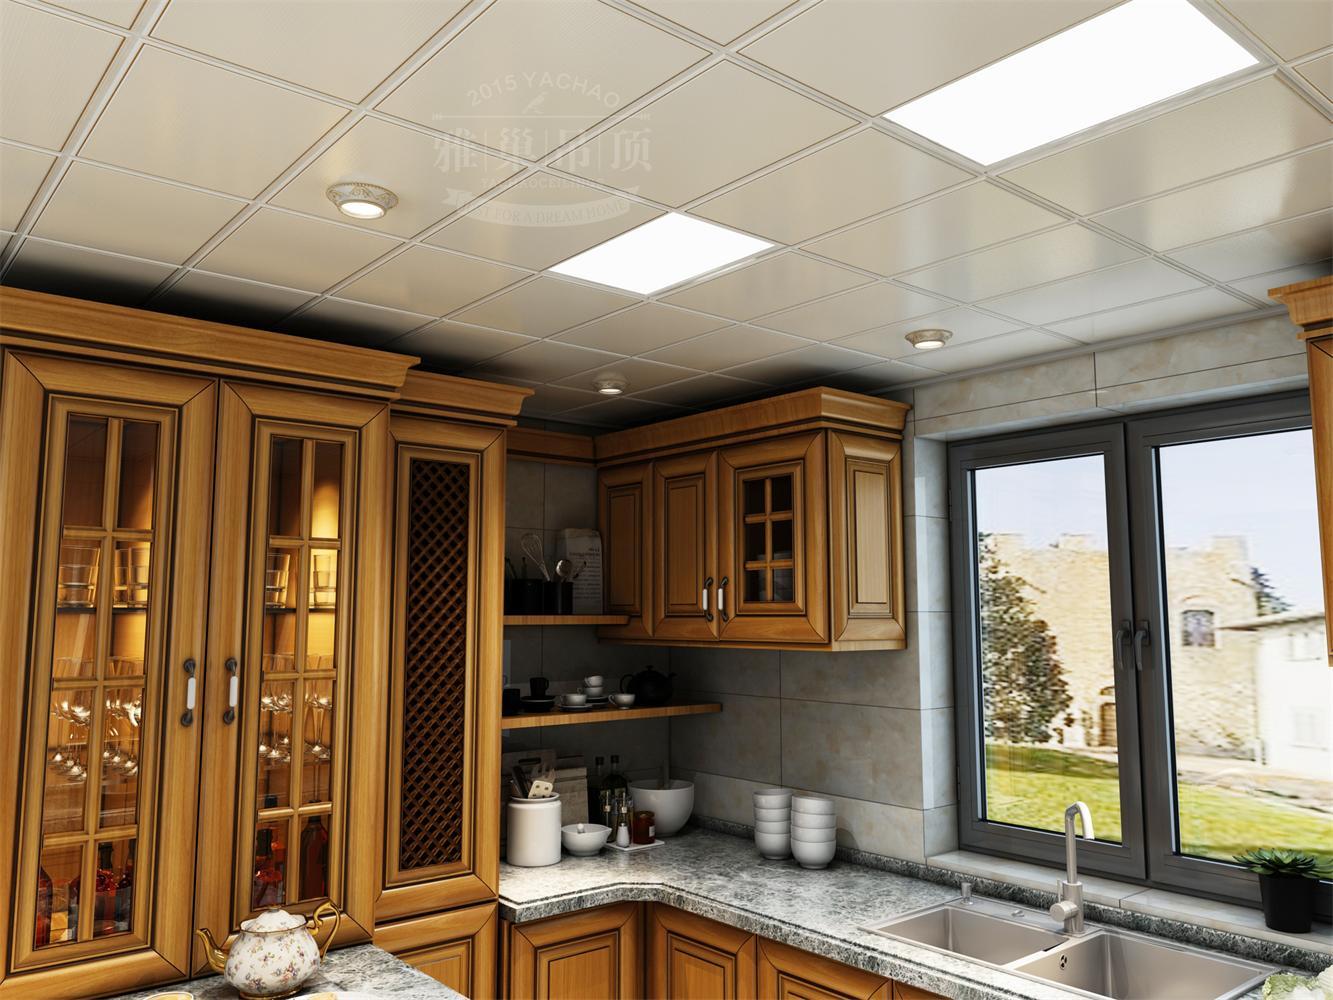 集成大板450*900*1350铝扣板吊顶厨房卫生间客厅天花材料同蜂窝板-阿里巴巴